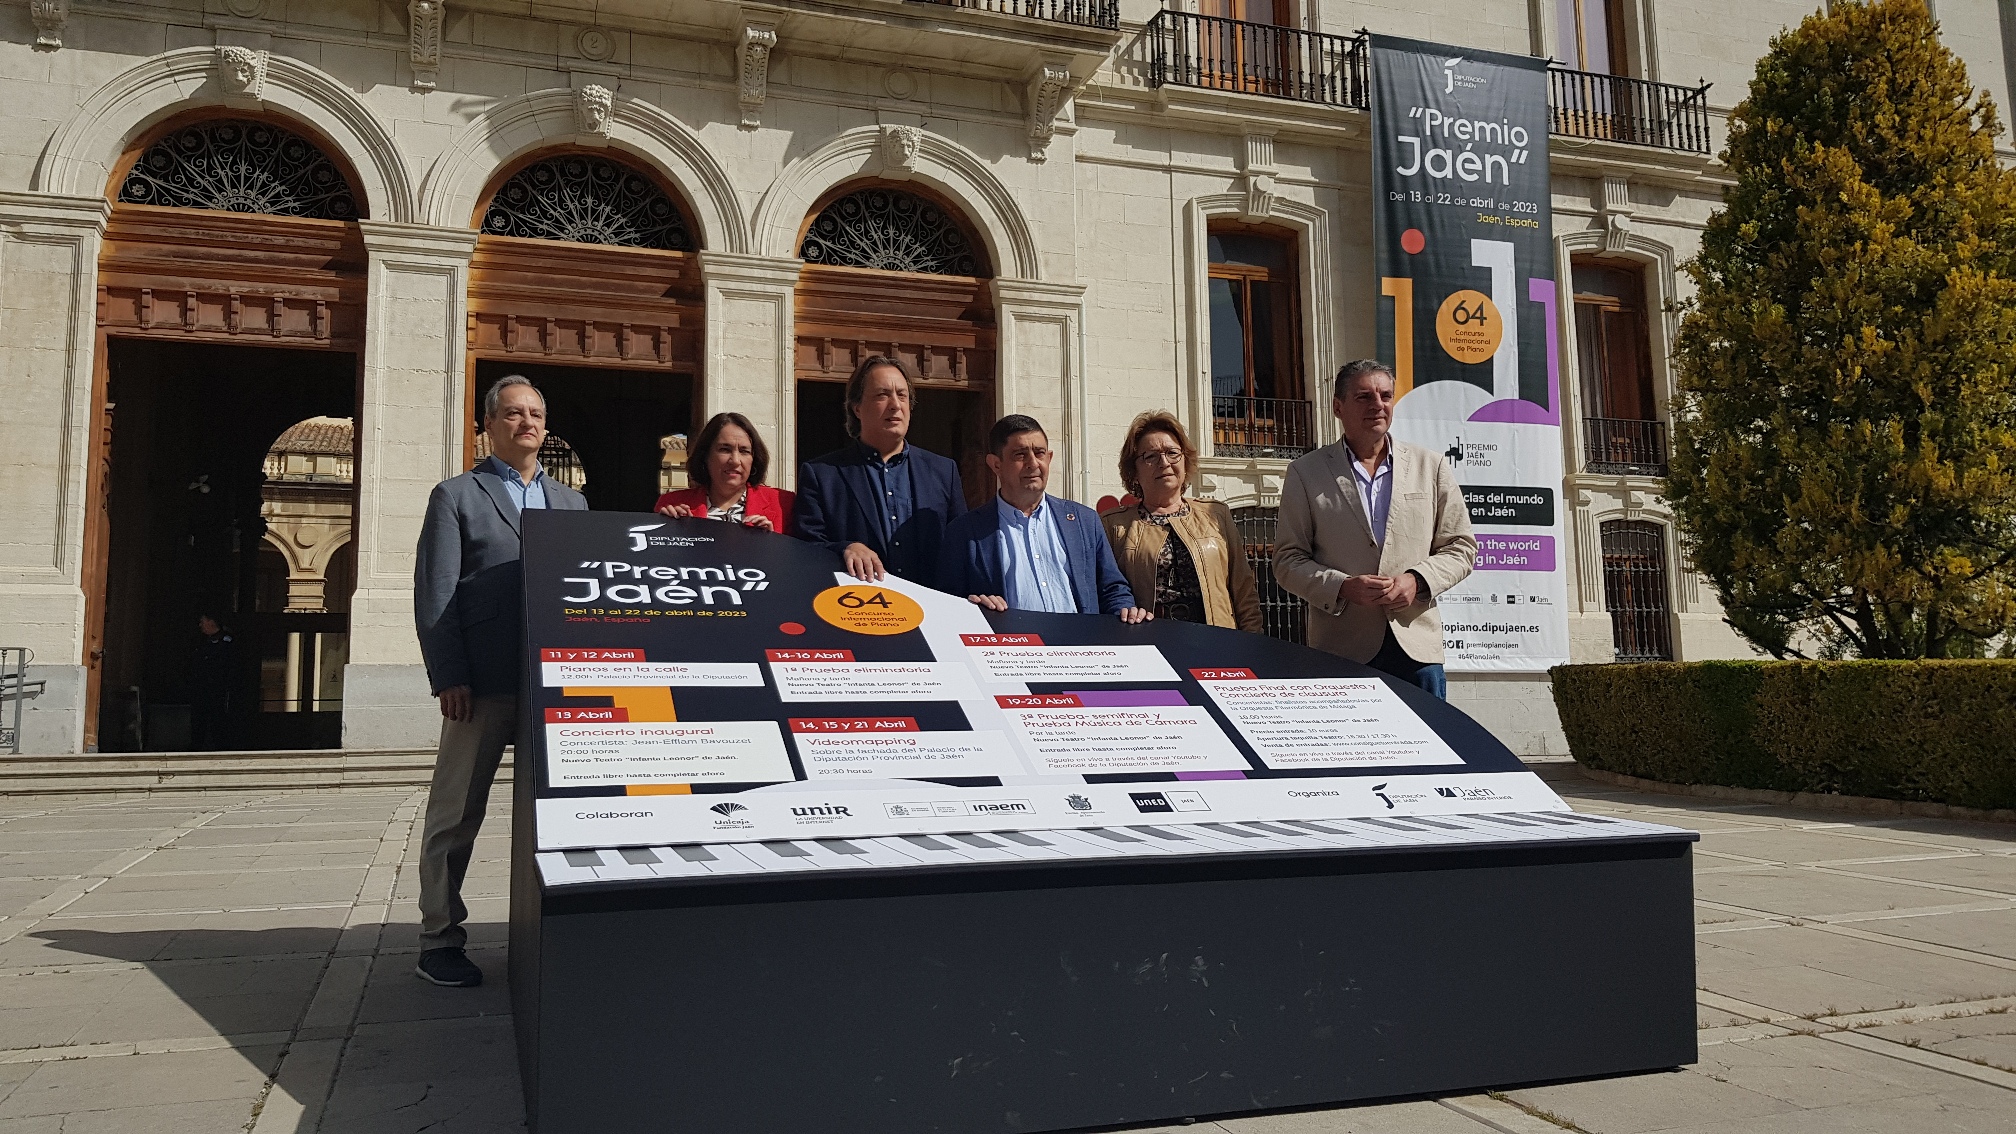 Foto de la noticia: Casi un centenar de intérpretes procedentes de 23 países se inscriben para tomar parte en el 64º Premio Jaén de Piano